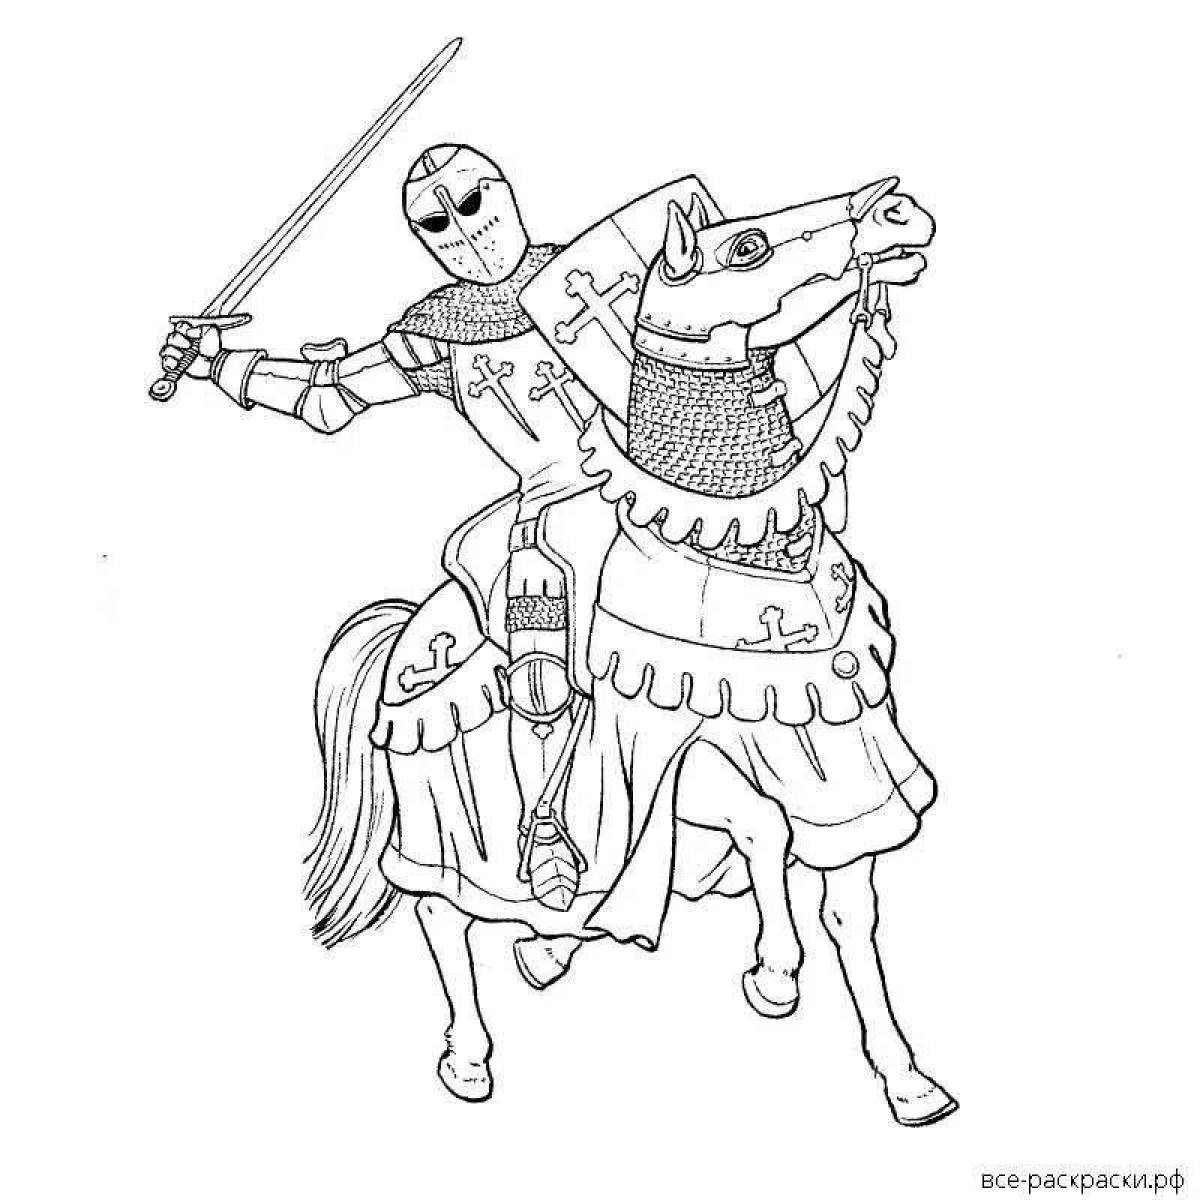 Роскошная раскраска рыцарь на коне